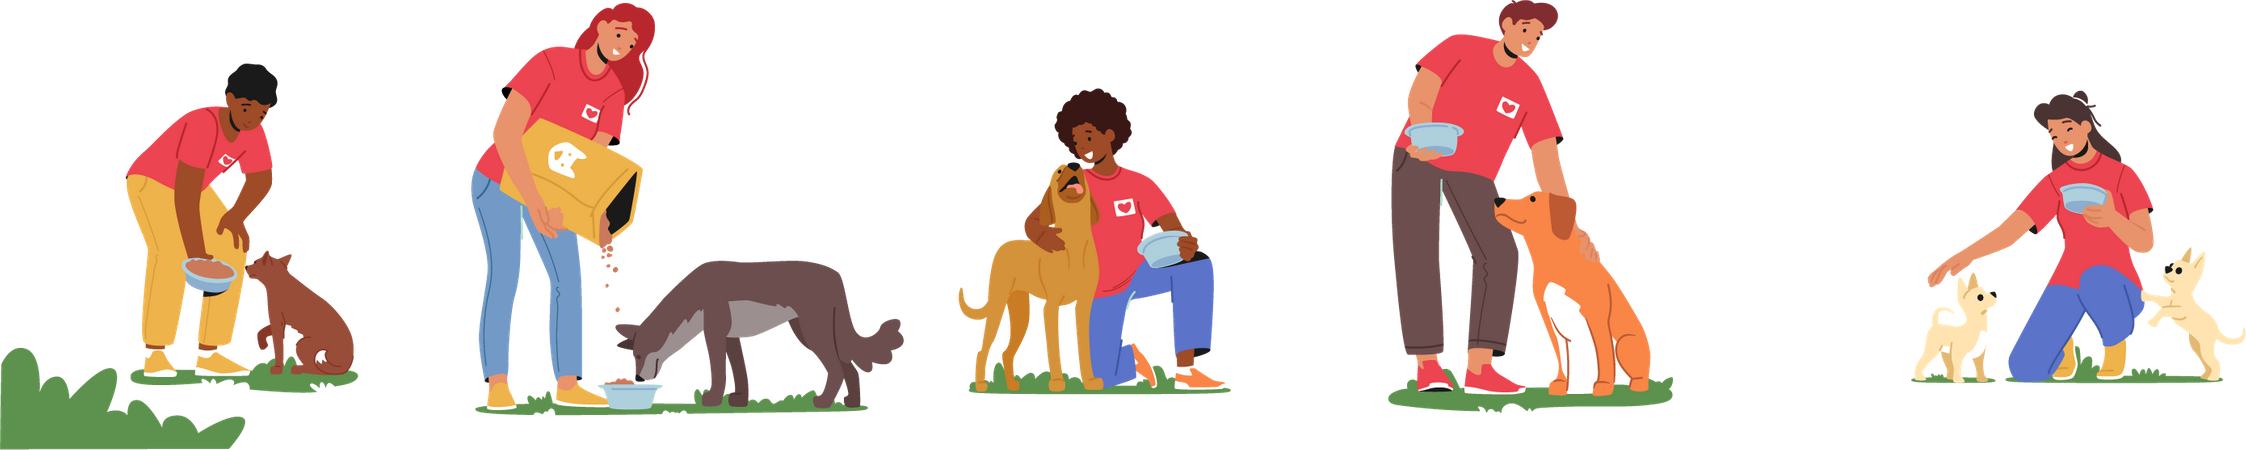 Des bénévoles nourrissent des chiens  Illustration